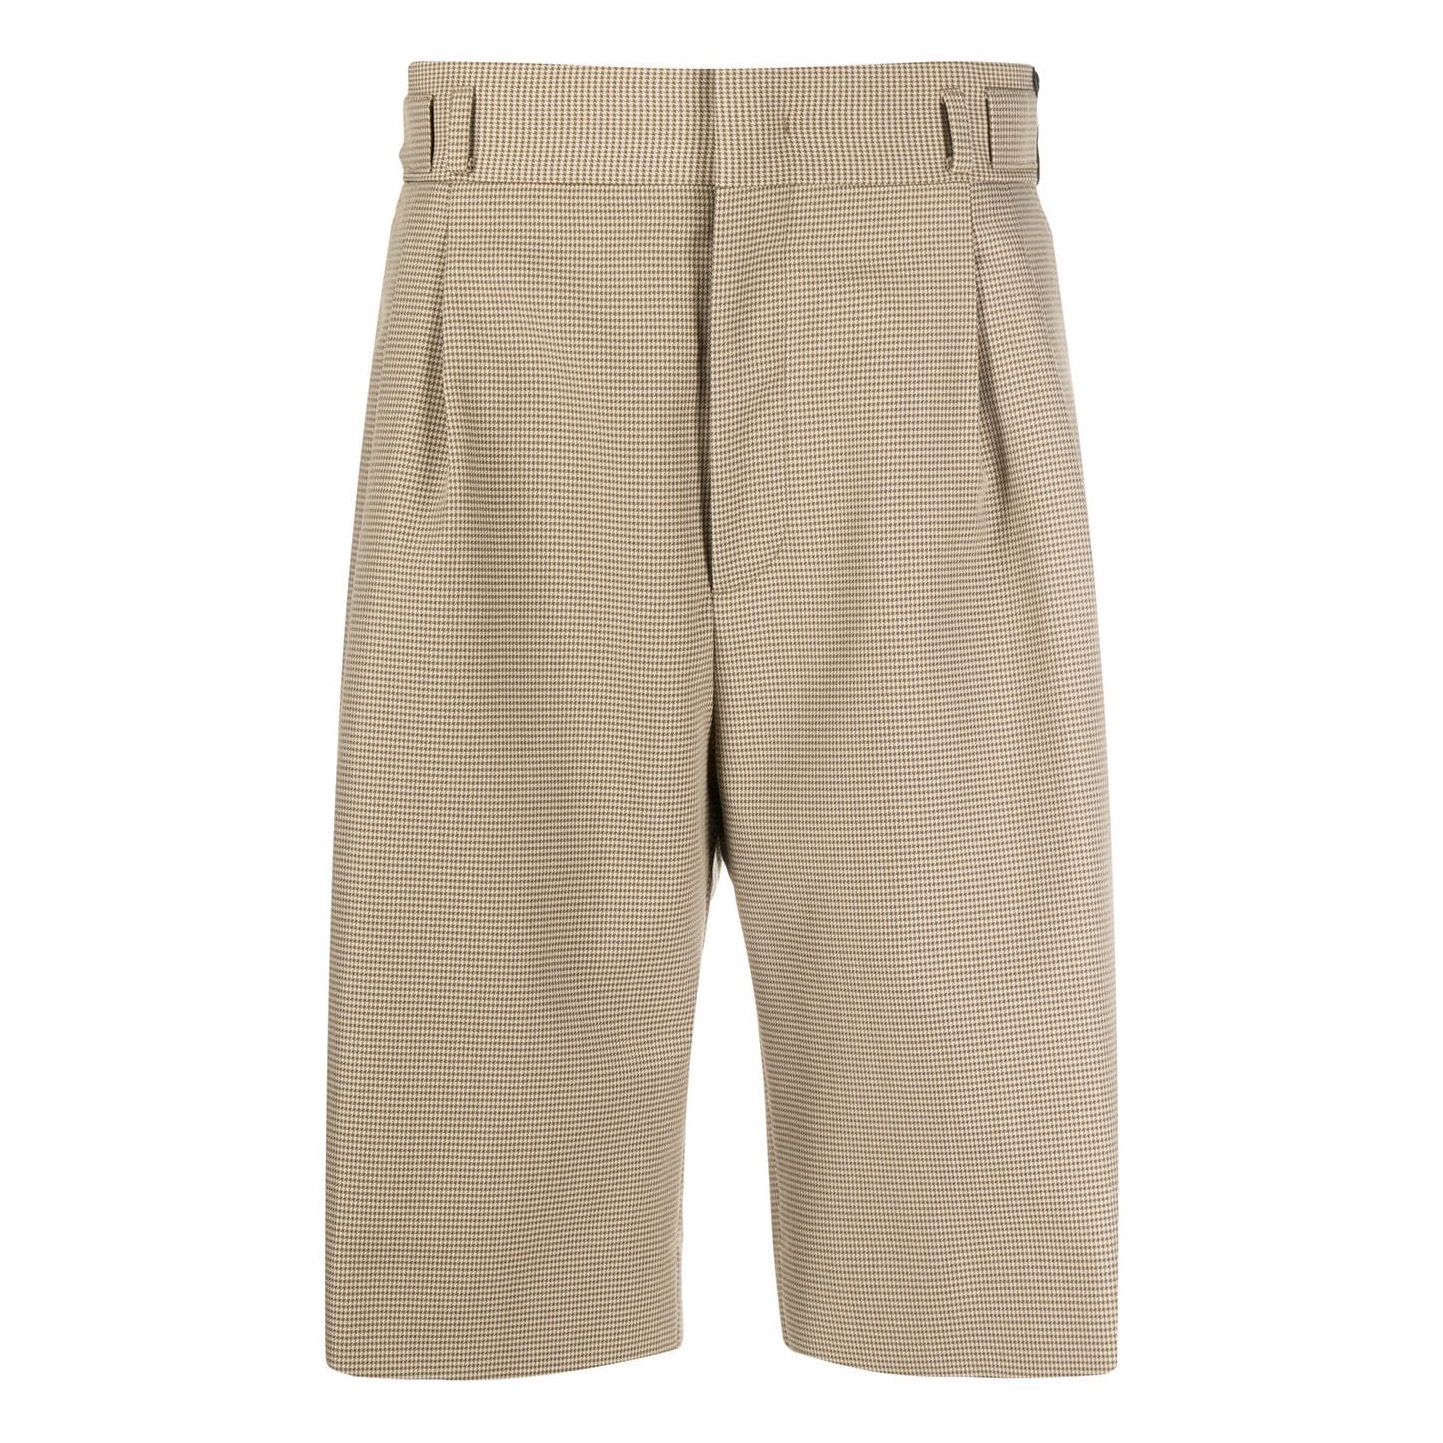 Männer-Shorts: Kurze Hosen für den Sommer - Wie man sie trägt und kombiniert